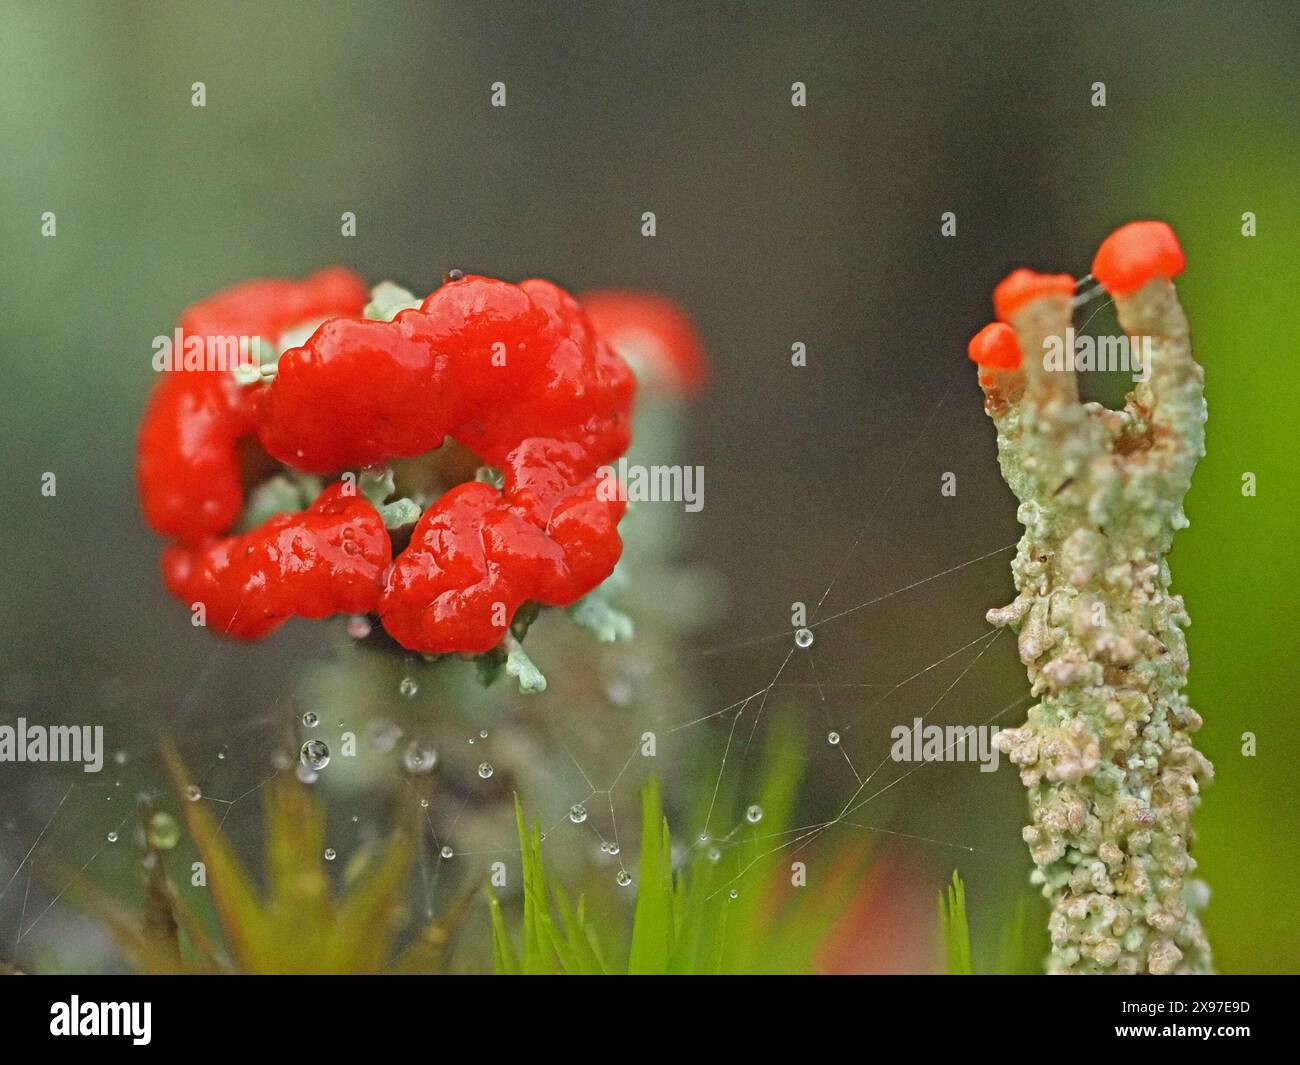 Immagine macro ravvicinata di fantastici corpi fruttati rossi della Cladonia cristatella: Soldati britannici licheni su gambi grigi Cumbria, Inghilterra, Regno Unito Foto Stock